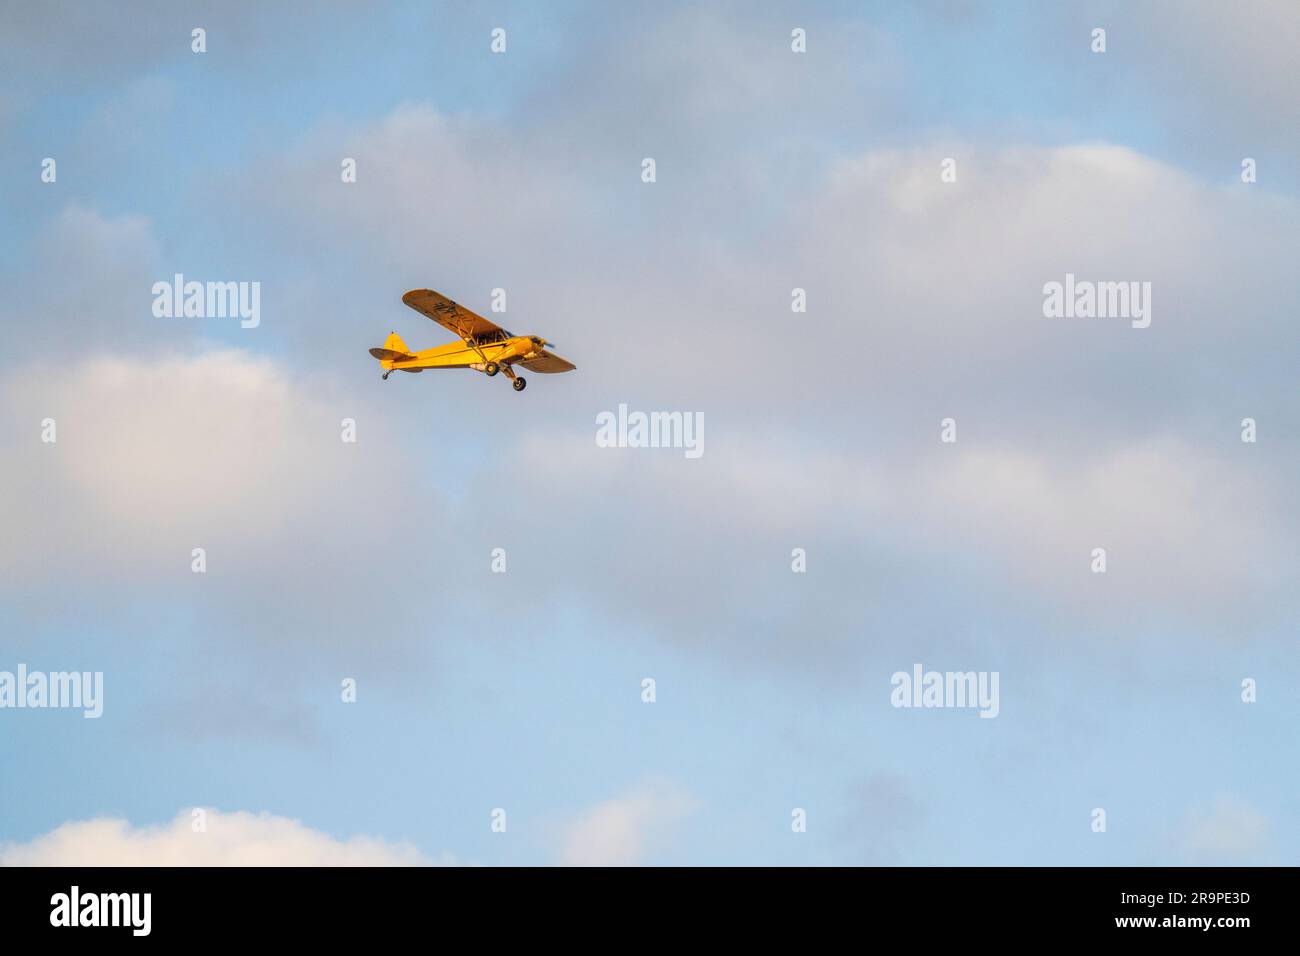 Die gelbe Cessna fliegt über die Kulisse, blauer Himmel mit weißen Wolken. Nashornschutz, Wilderei. Namibia, Afrika Stockfoto